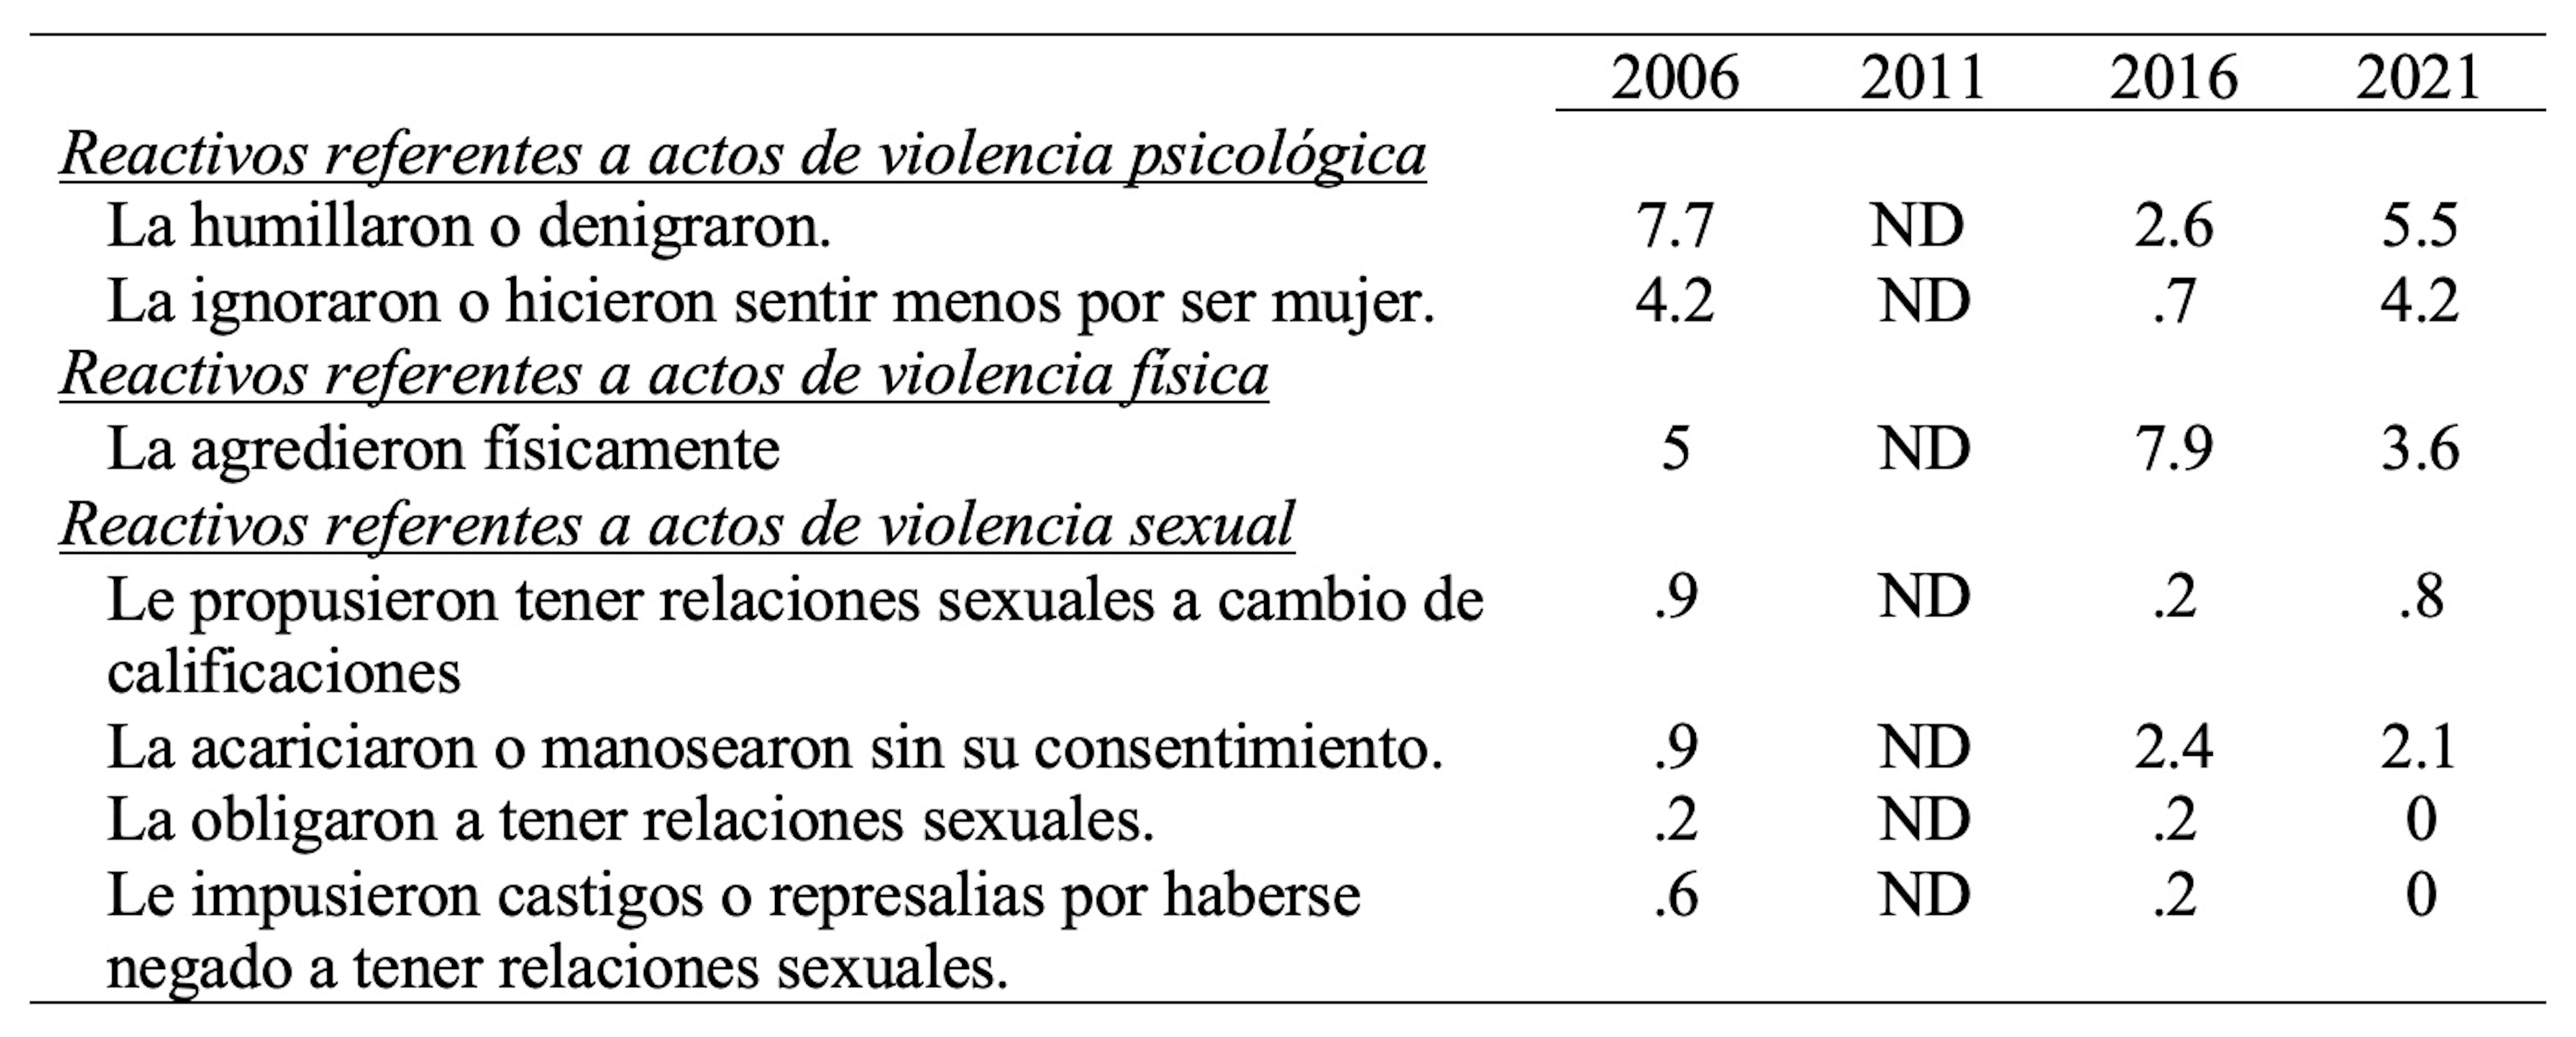 Porcentaje de mujeres
chihuahuenses de 15 años y más que sufrieron violencia en el contexto educativo
en el año previo